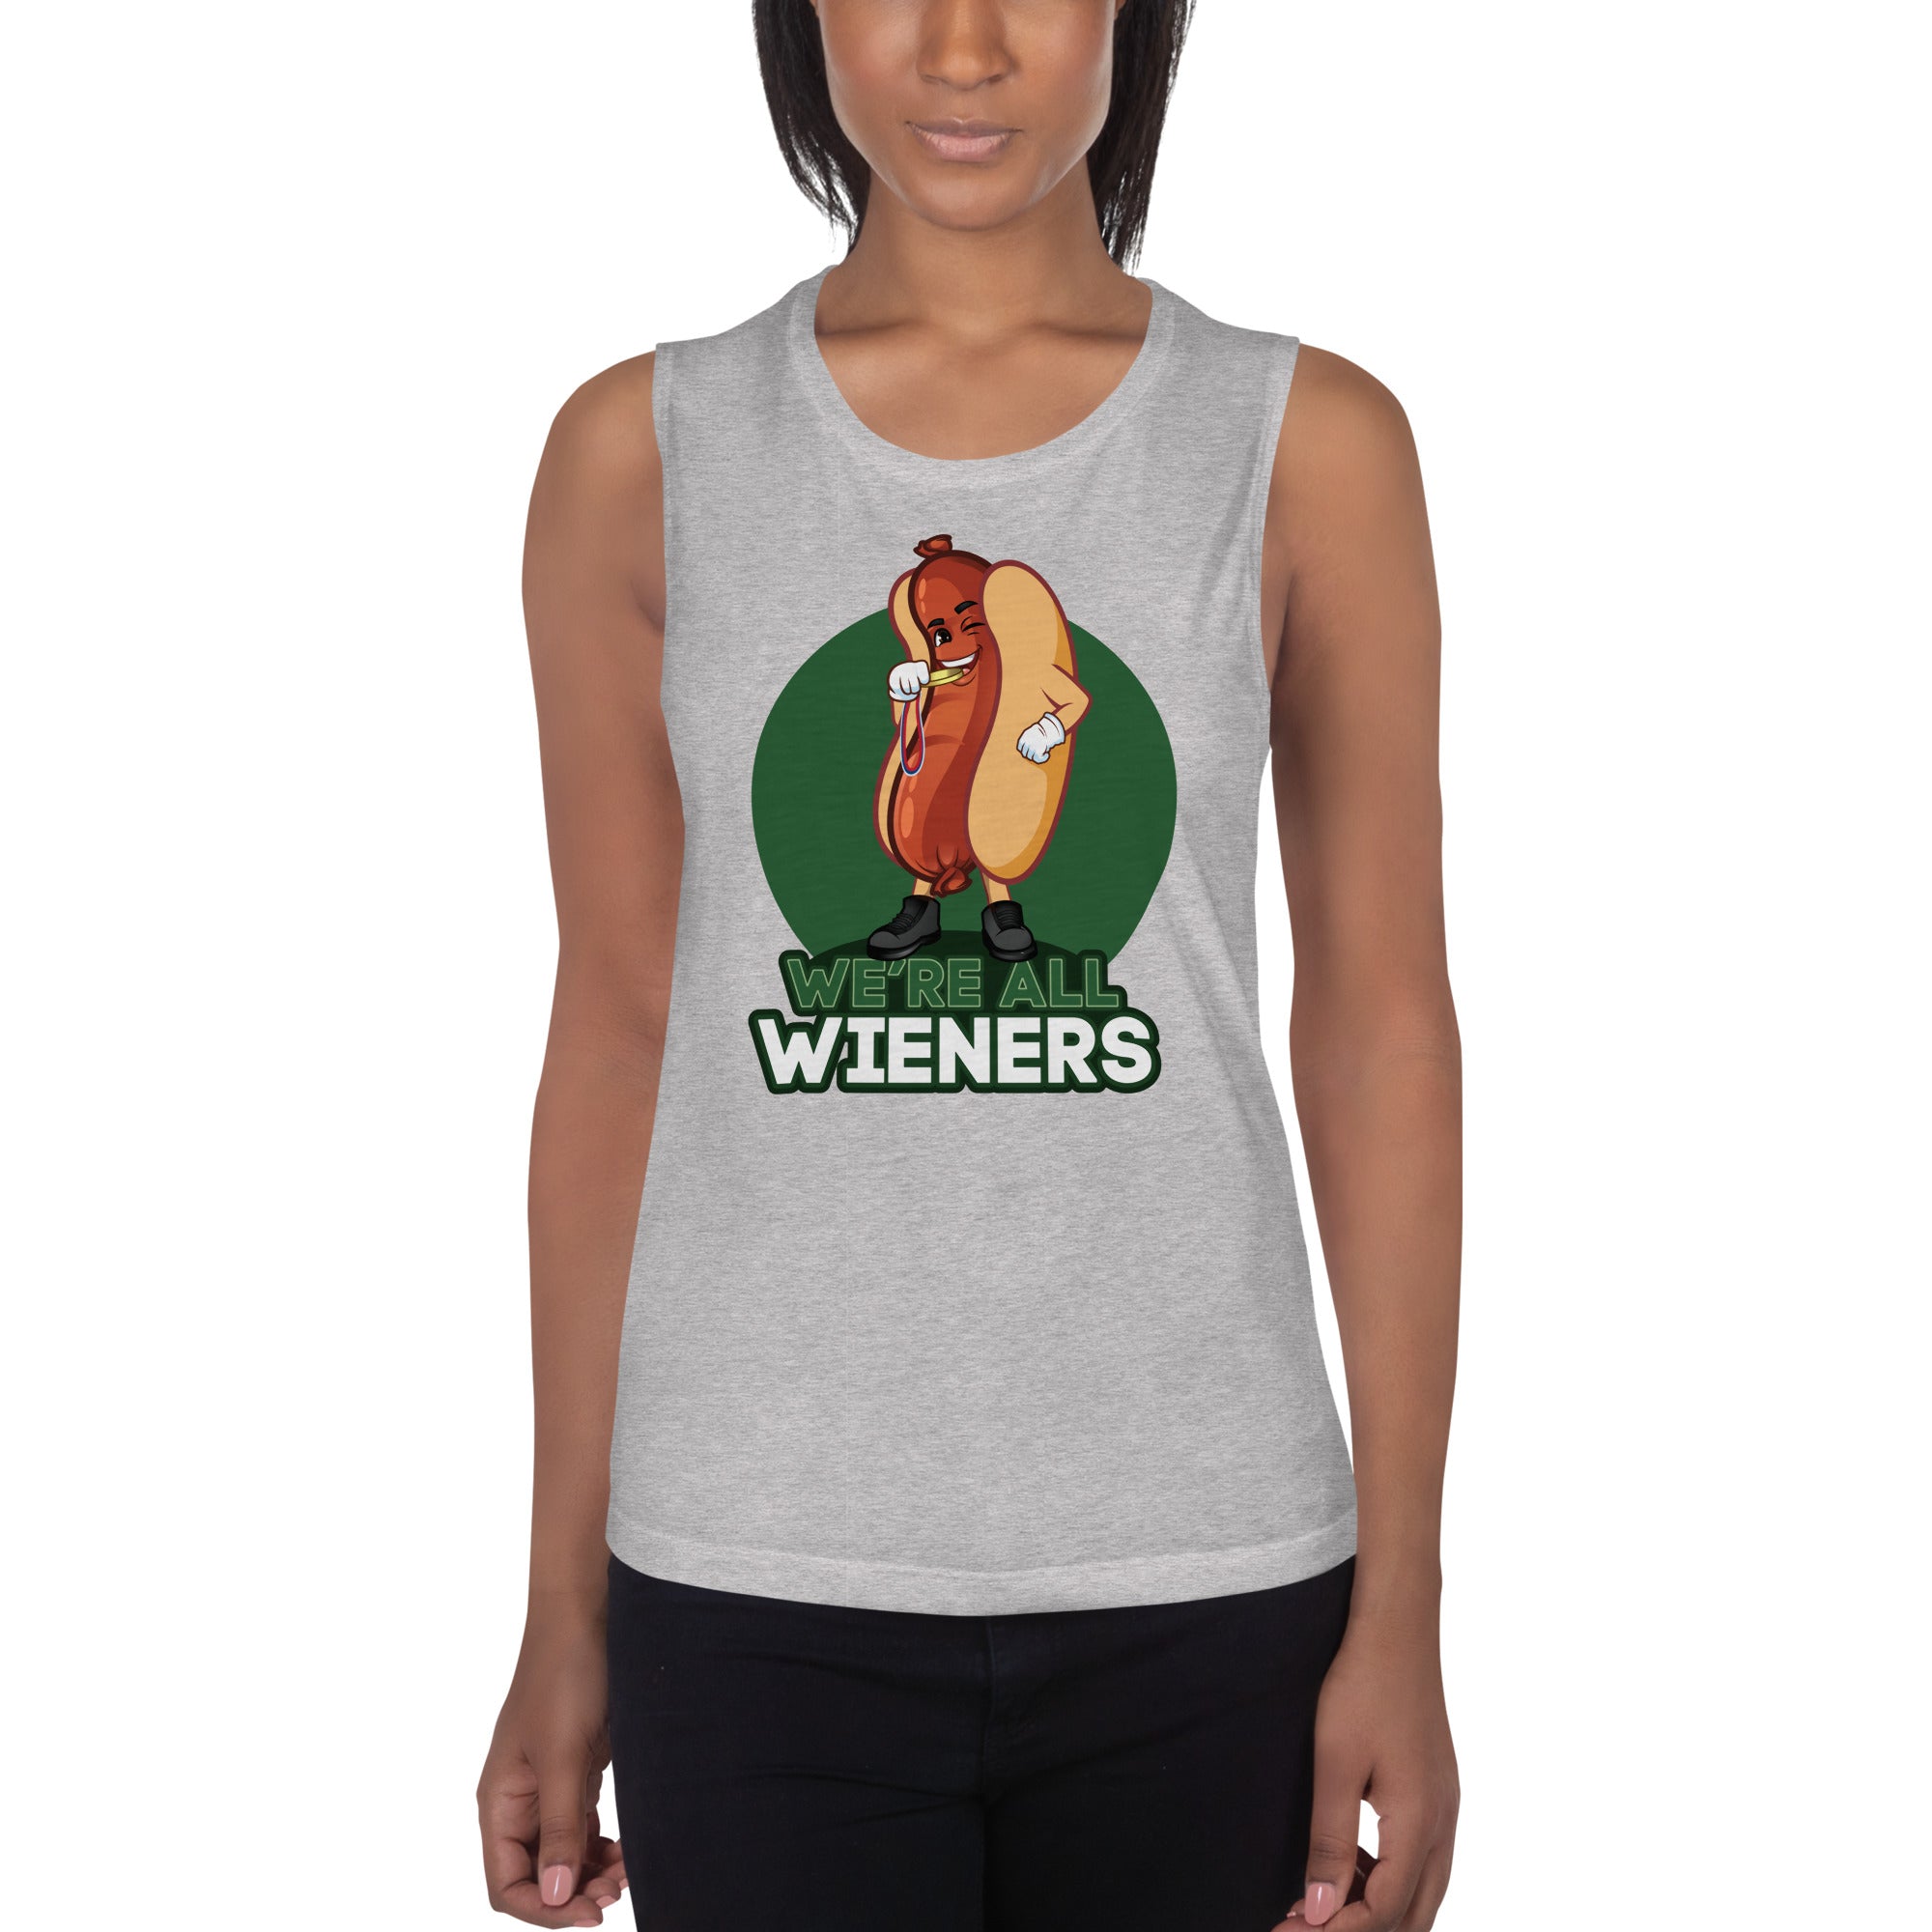 We're All Wieners Women's Muscle Tank - Green